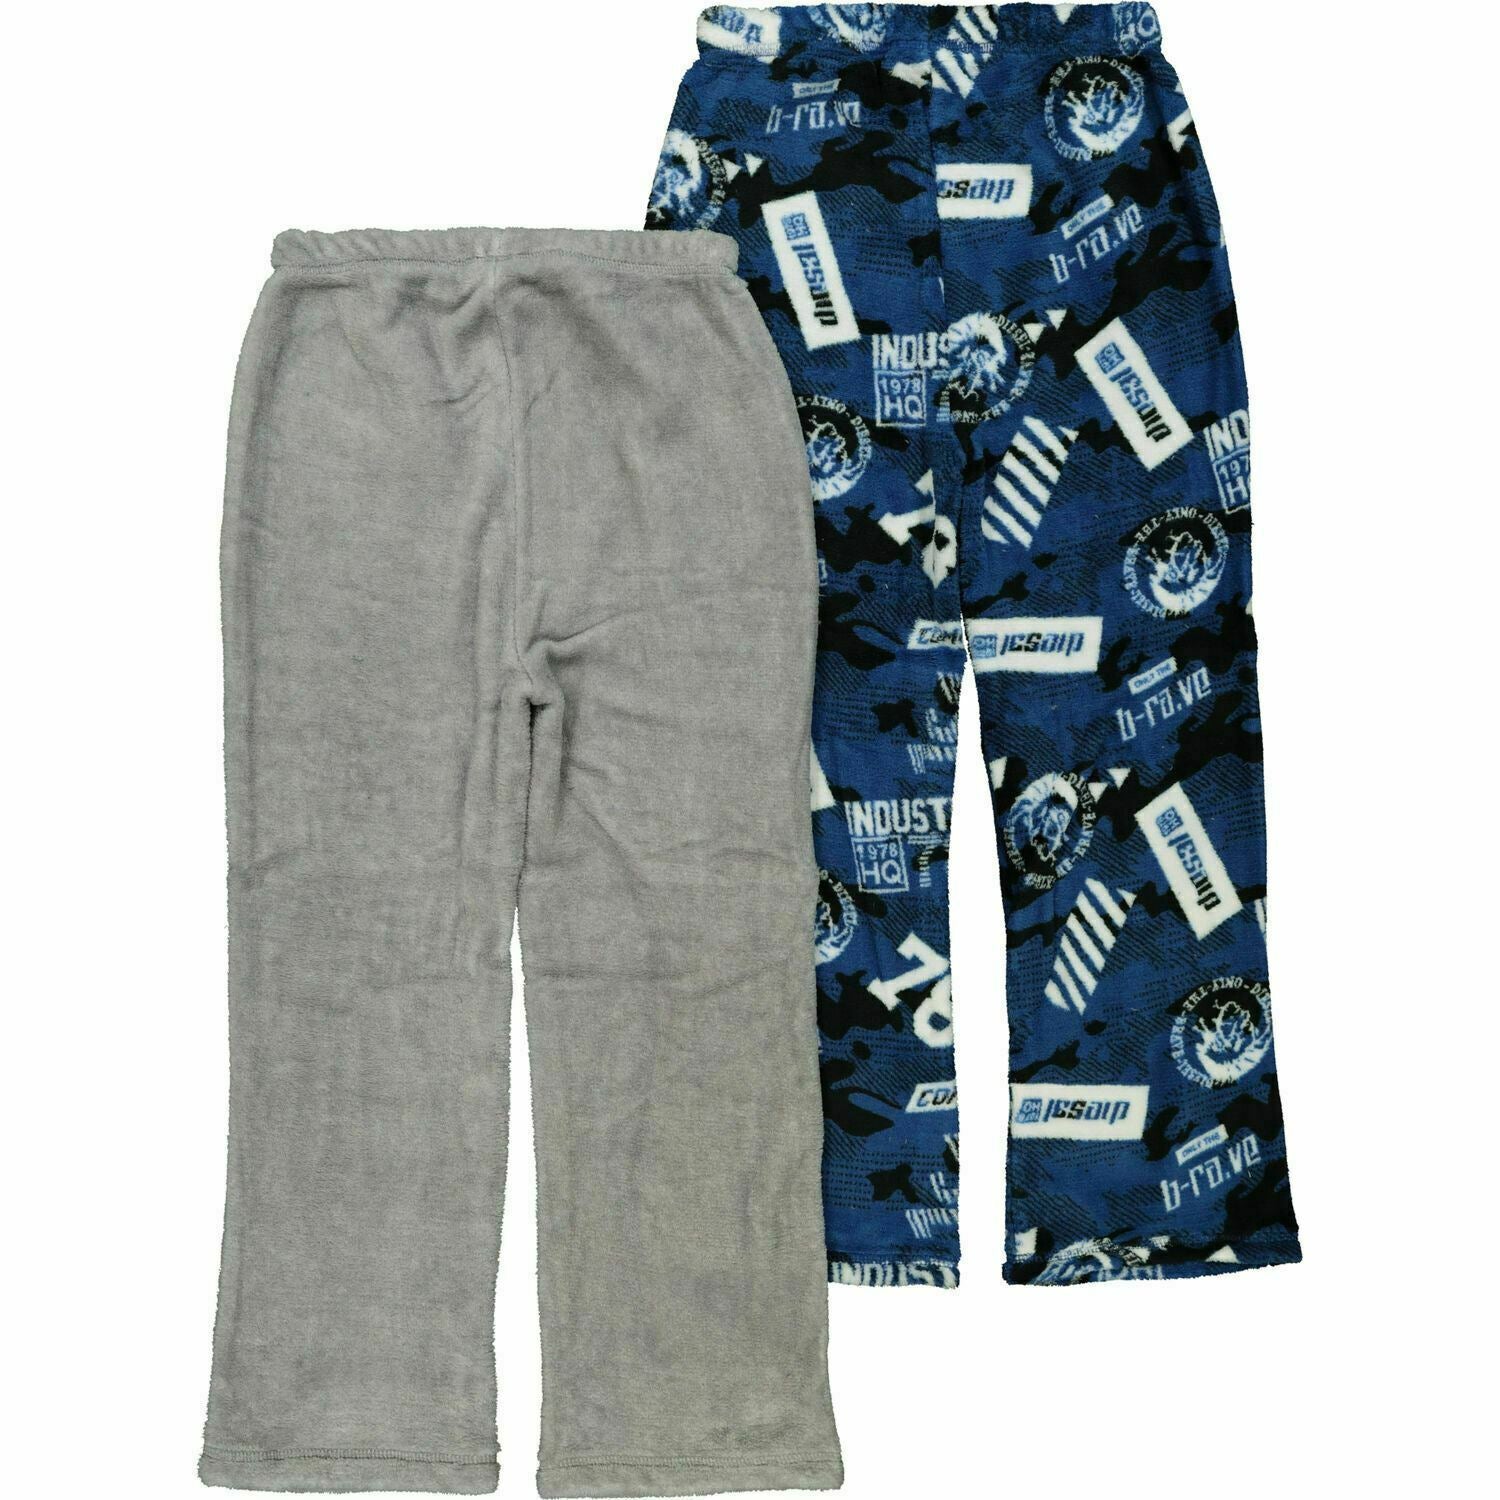 DIESEL 2pk Boys Fleece Loungewear Pants Pyjama Bottoms Joggers Blue/Grey 8 years